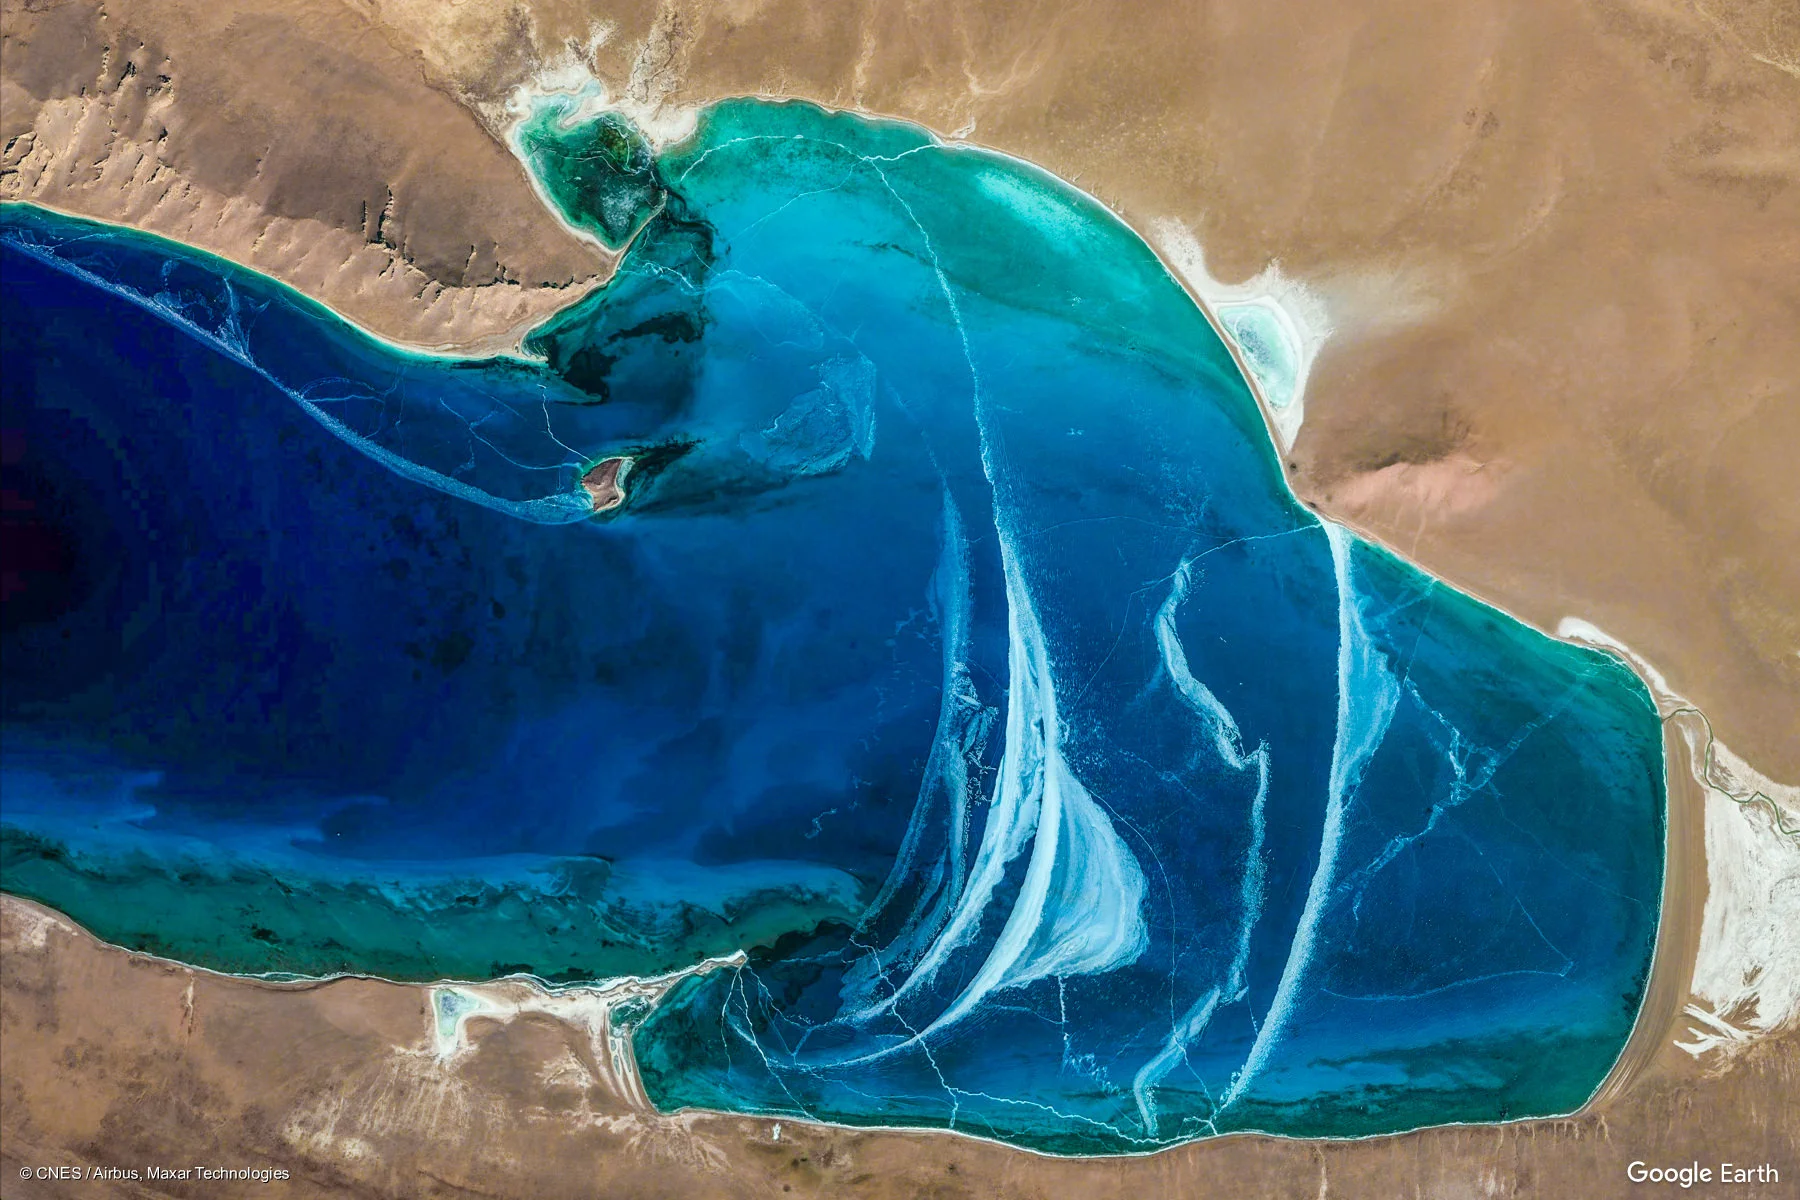 Компания Google показала новые фото Земли, что были сделаны из космоса – они нереальные - фото 467951